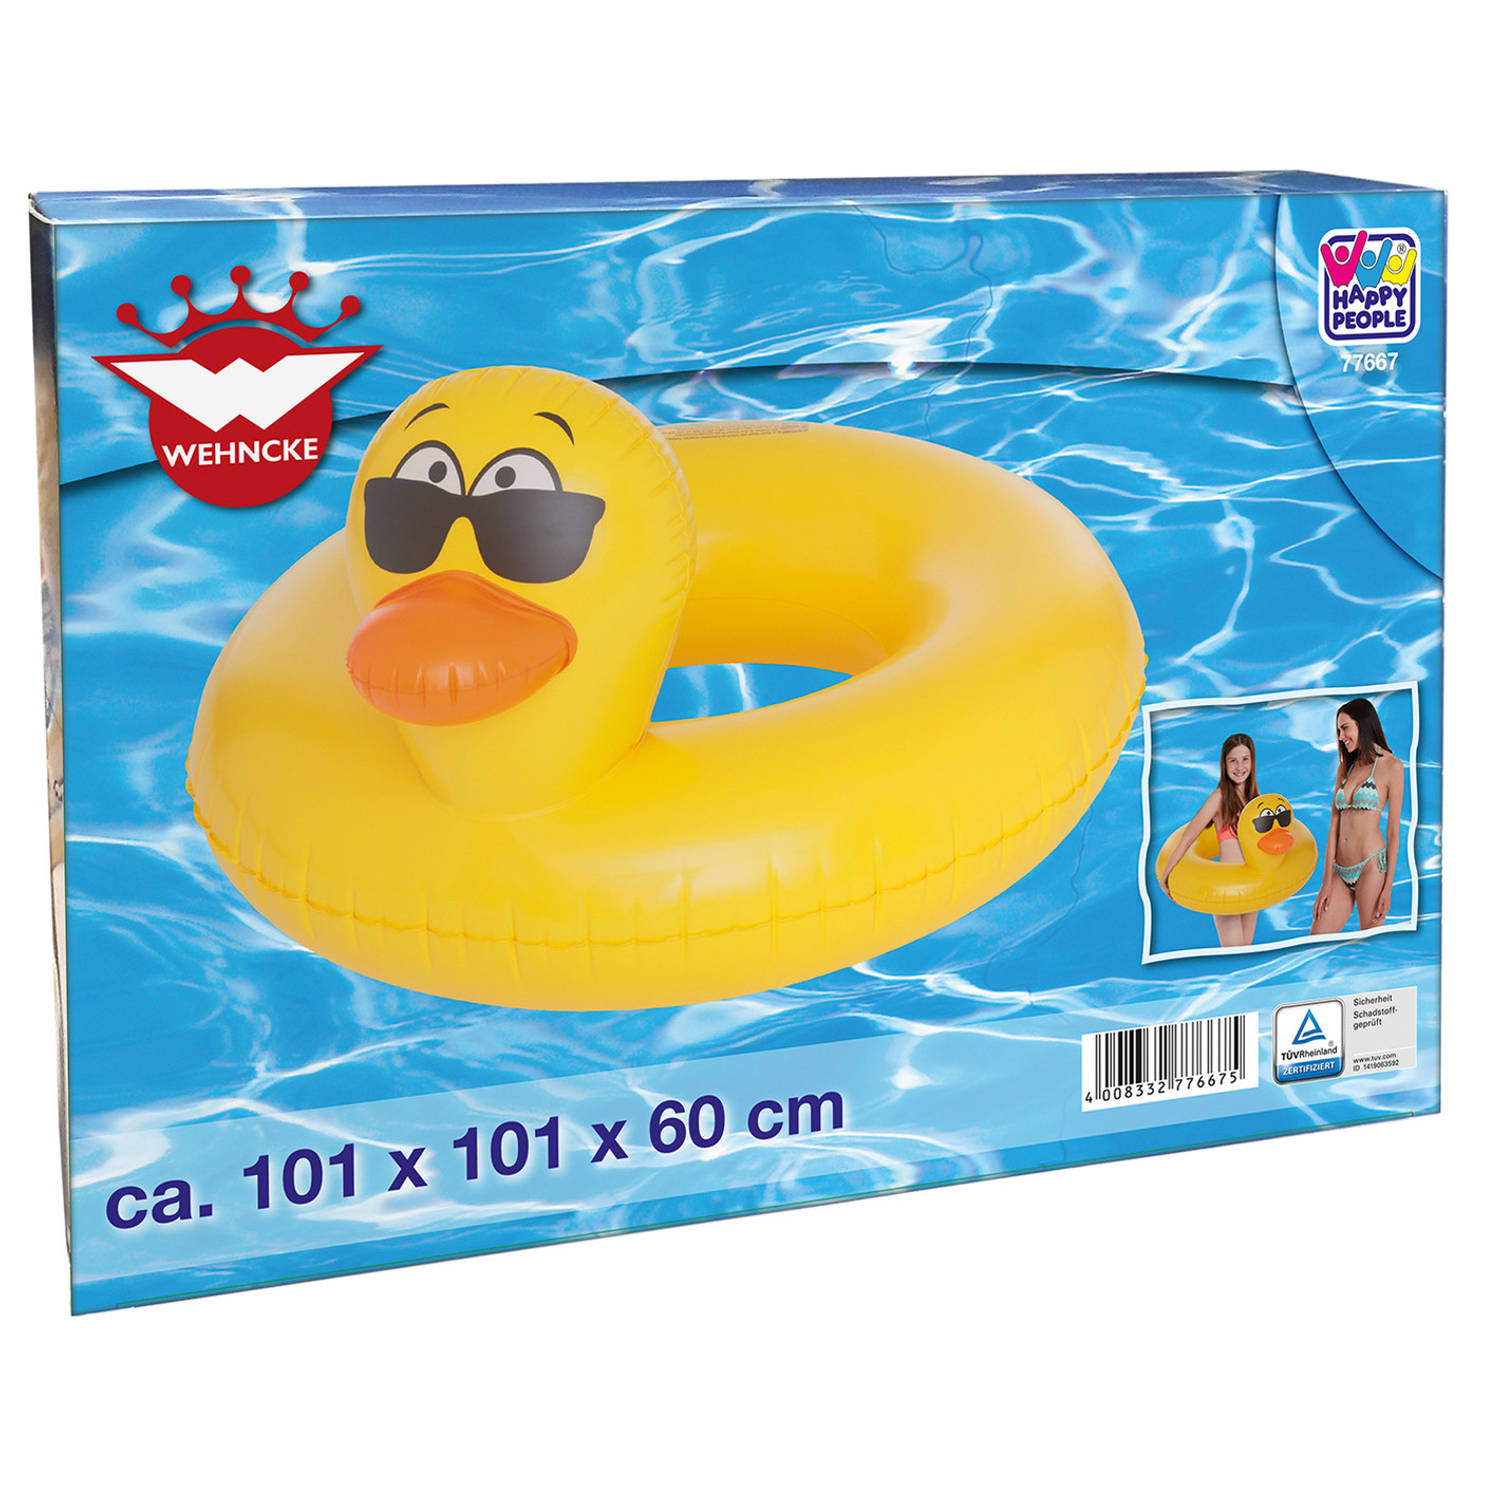 Gele eend opblaasbare zwemband/zwemring kids speelgoed - Zwembanden | Blokker